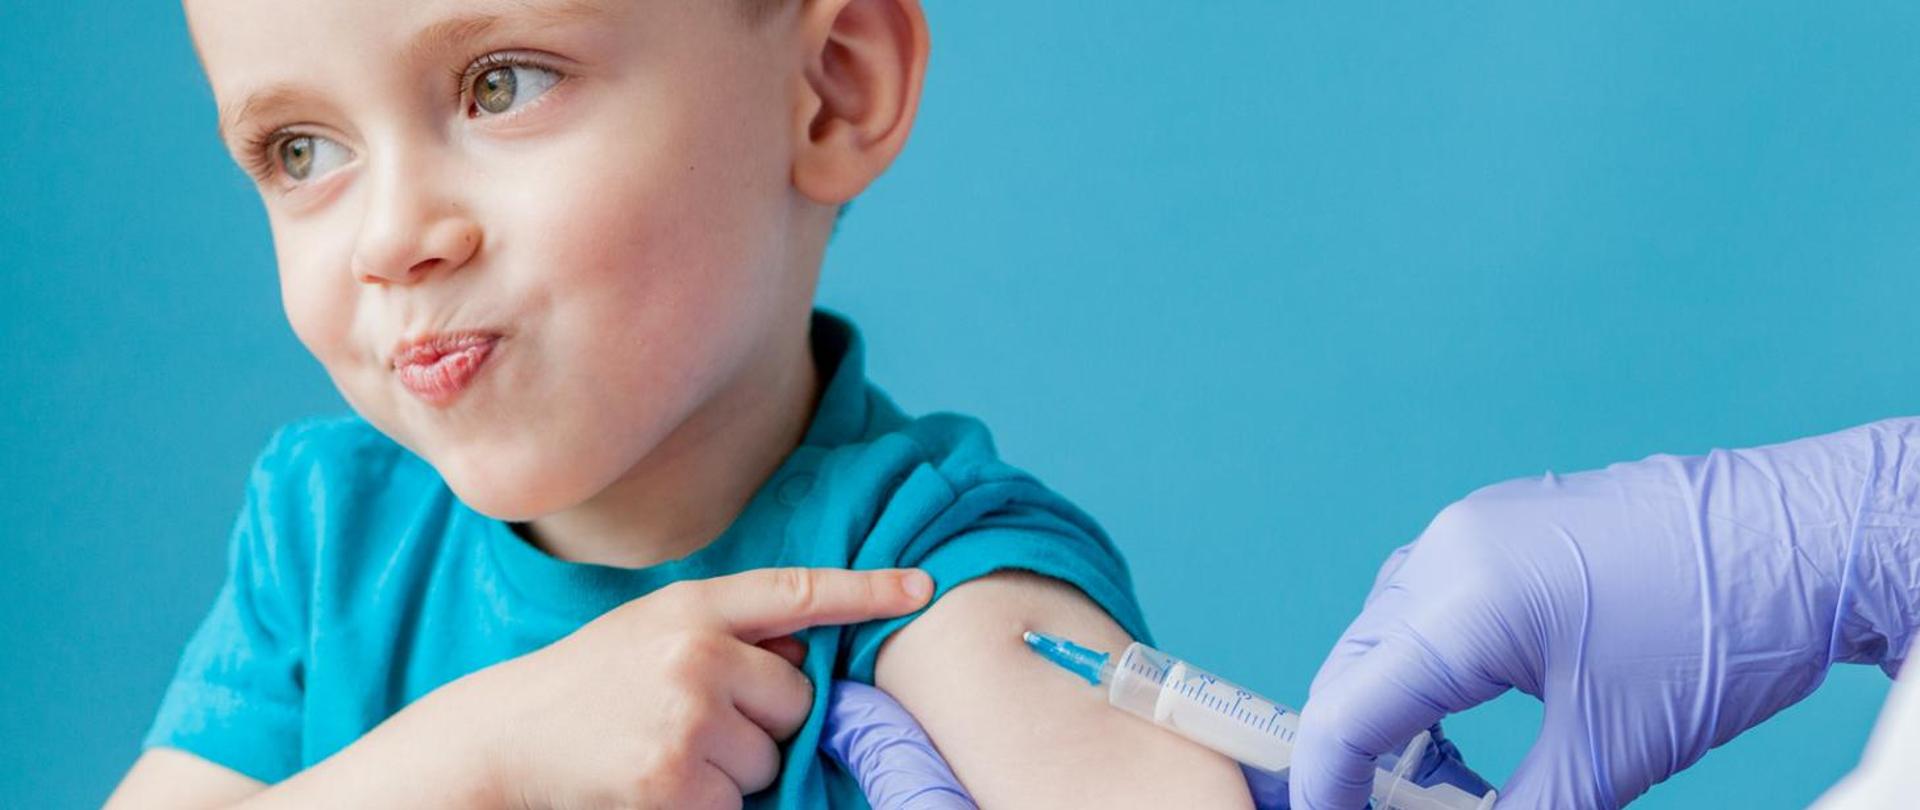 na zdjęciu młody chłopiec podczas szczepienia